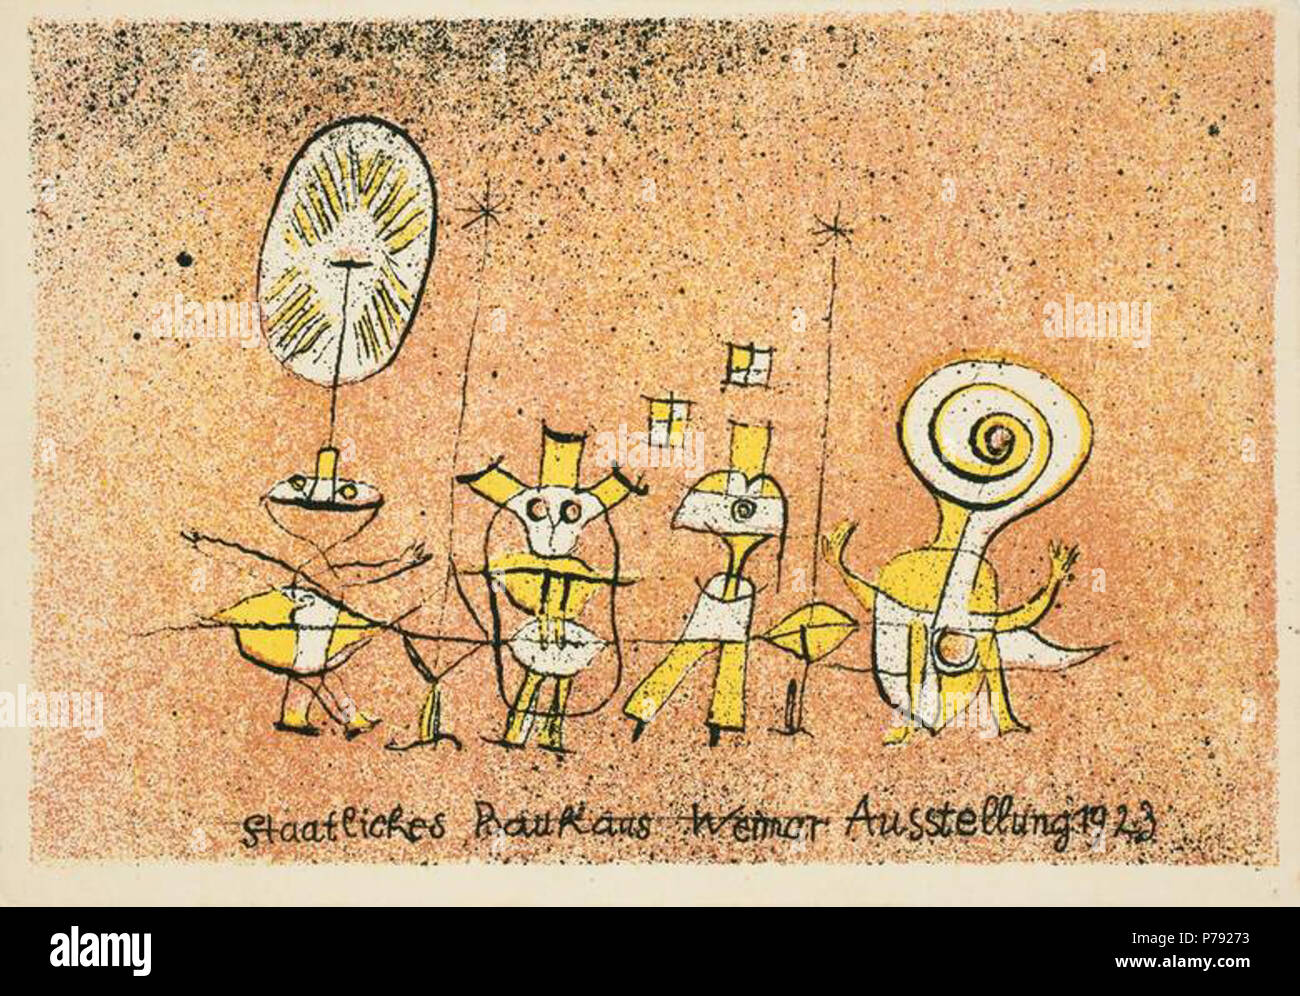 Die heitere Seite. Farblithographie auf leichtem Karton (Postkarte). 9,9 x 14,5 cm. Karte 5 aus einer Folge von 20 von Bauhaus-Lehrern und -Schülern gestalteten Postkarten, die aus Anlaß der Bauhaus-Ausstellung in Weimar 1923 erschienen. 1923 46 Paul Klee Die heitere Seite Stock Photo